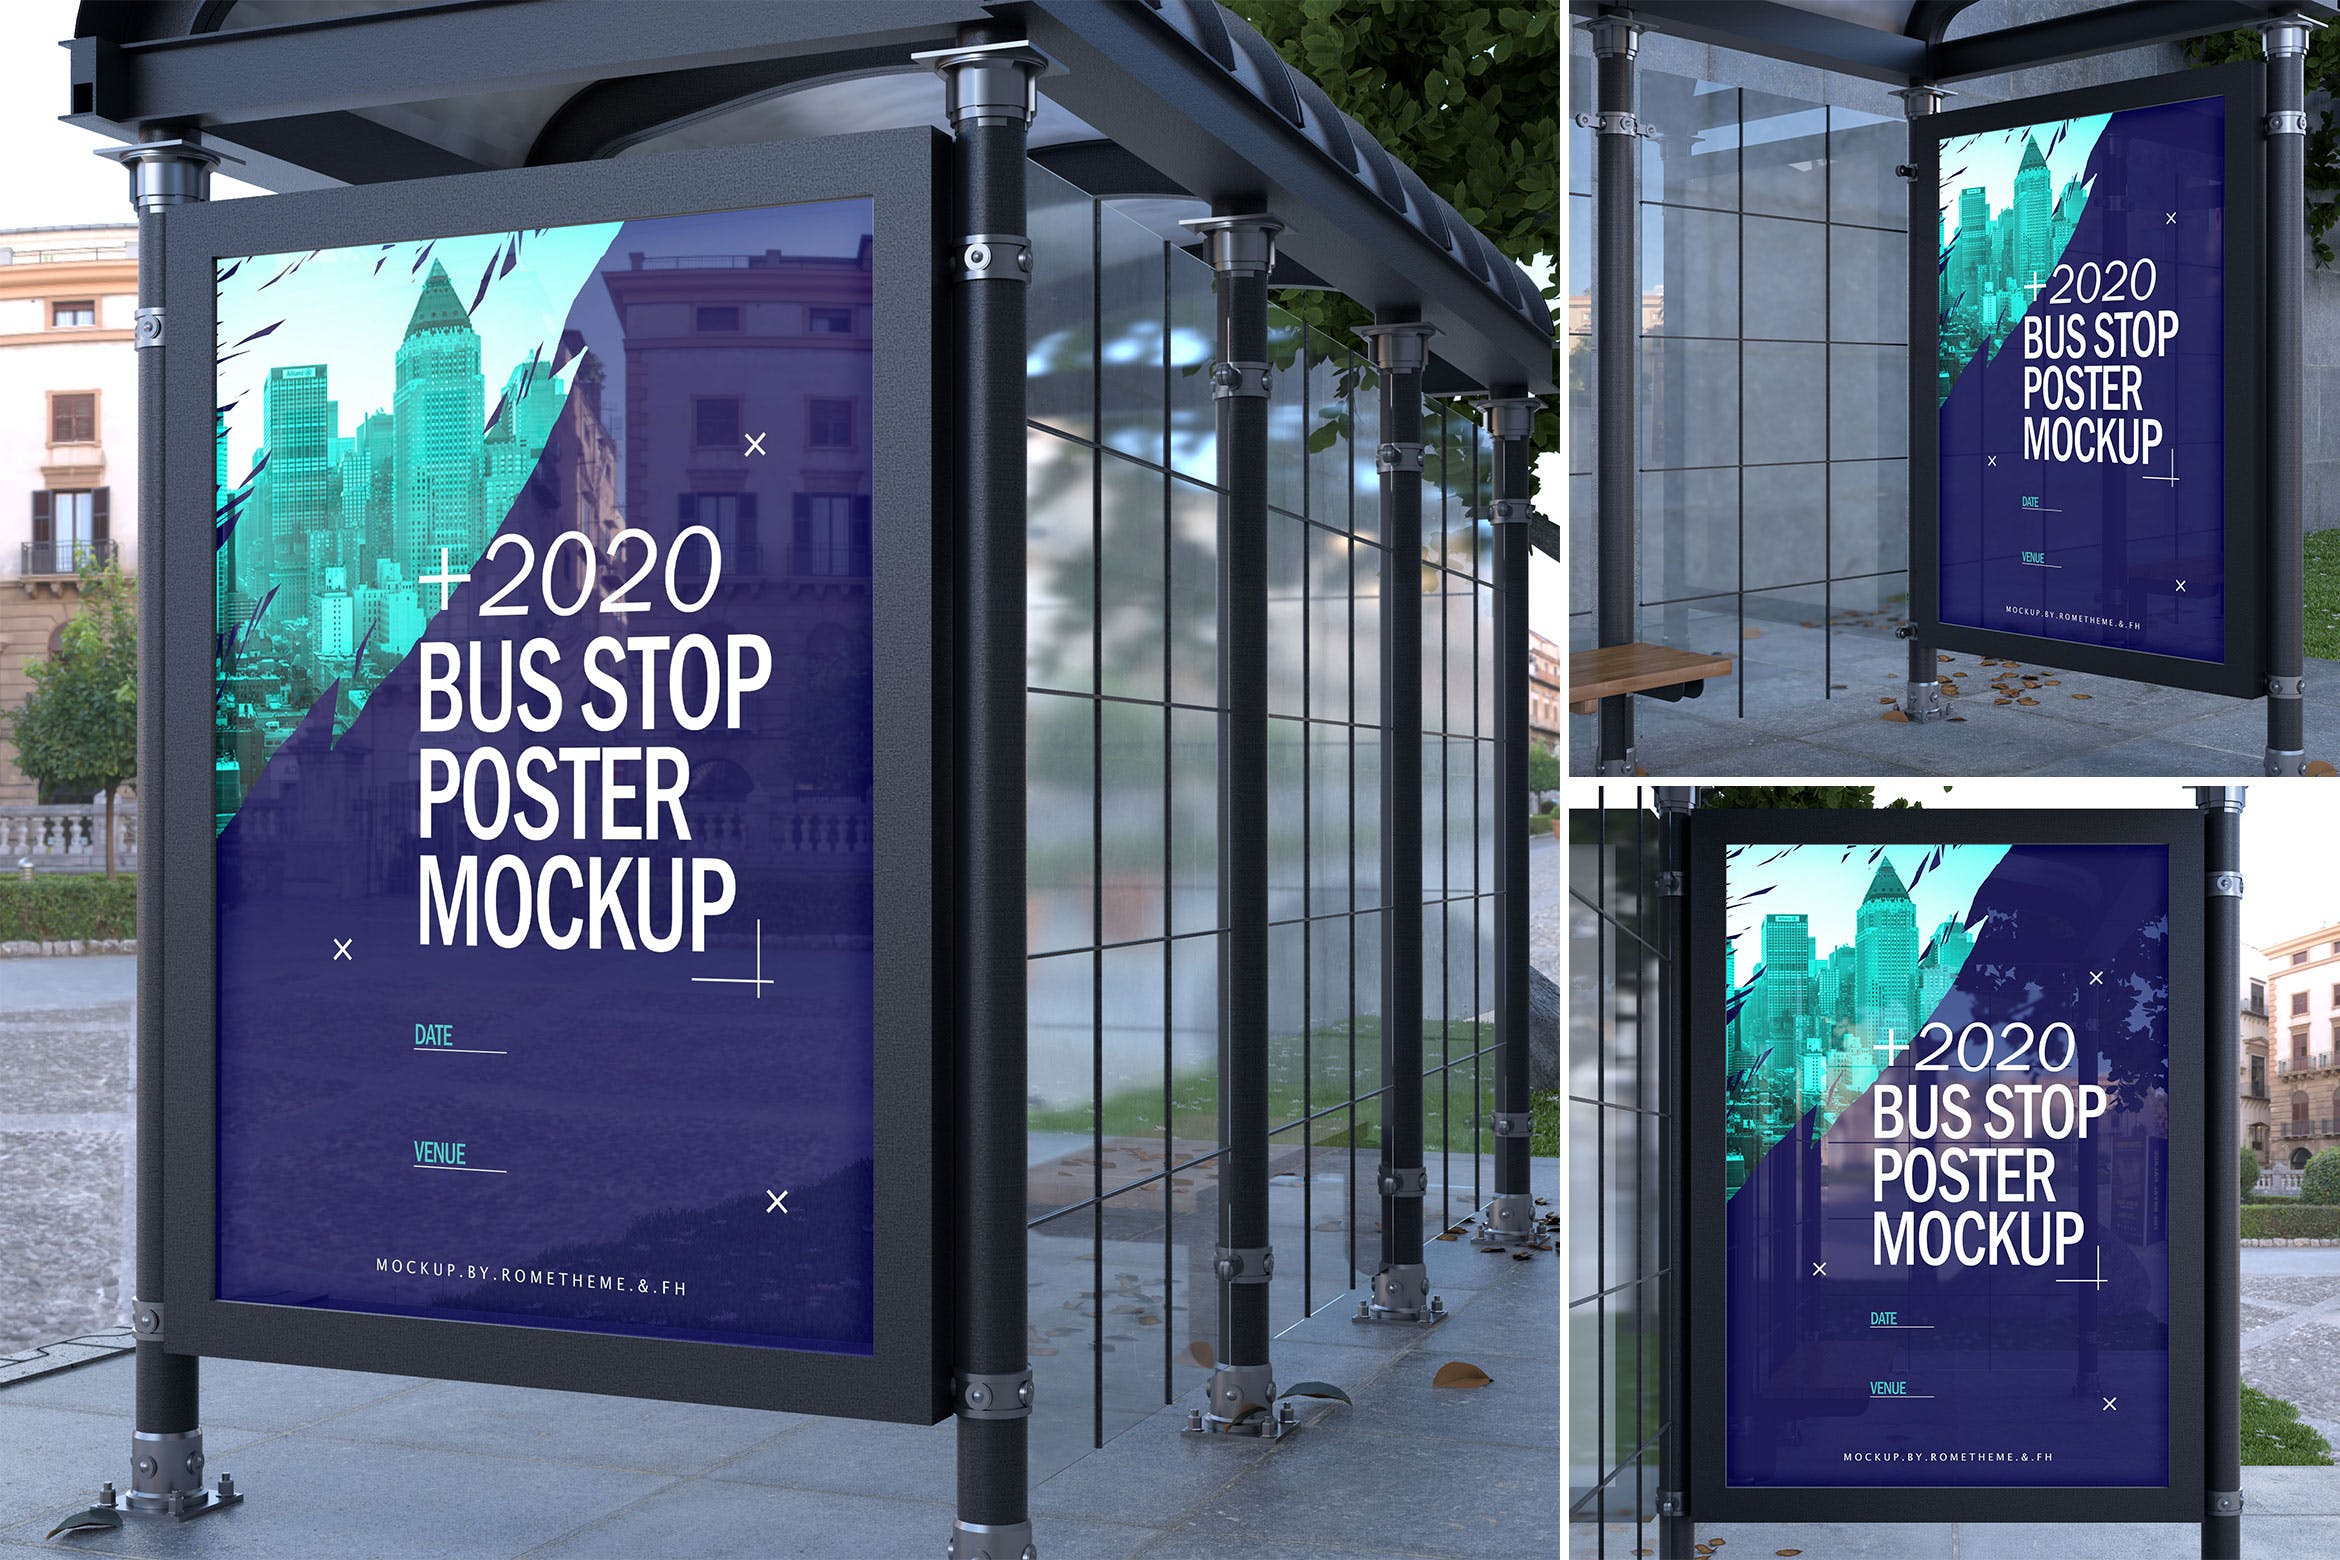 公交巴士站橱窗海报张贴效果图样机第一素材精选 Bus Stop Poster – Mockups FH插图